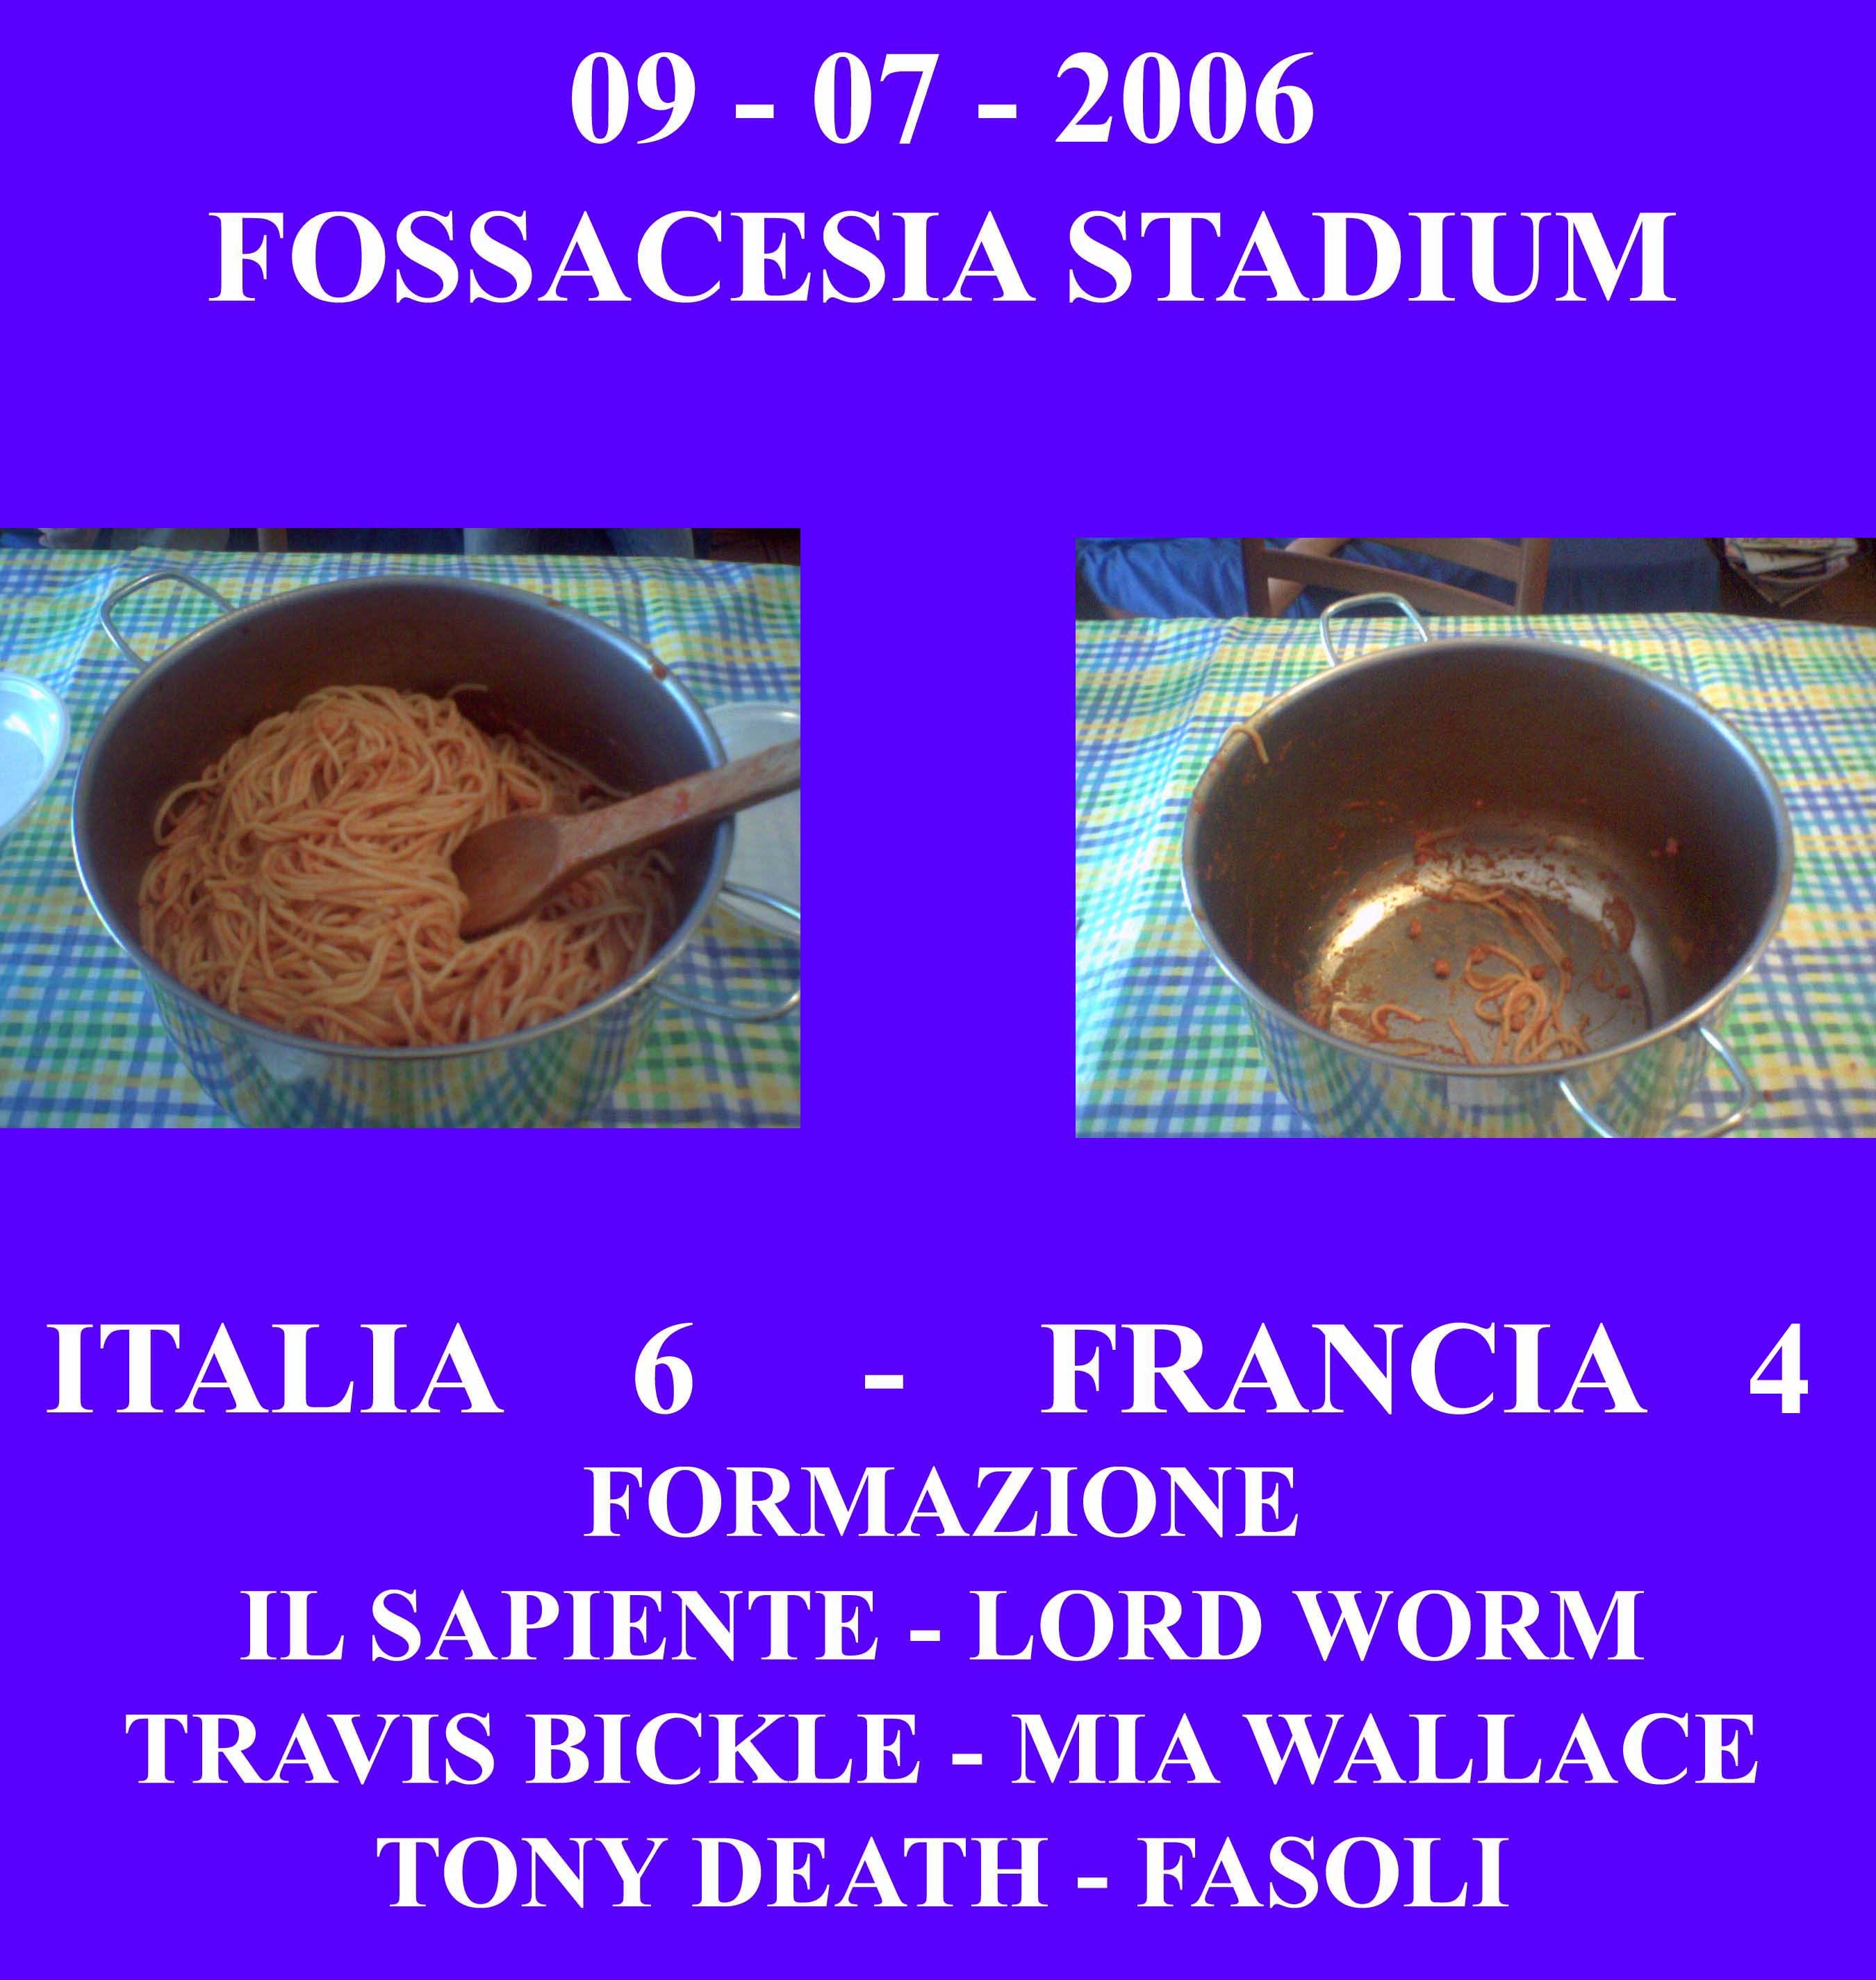 ITALIA - FRANCIA 6 - 4